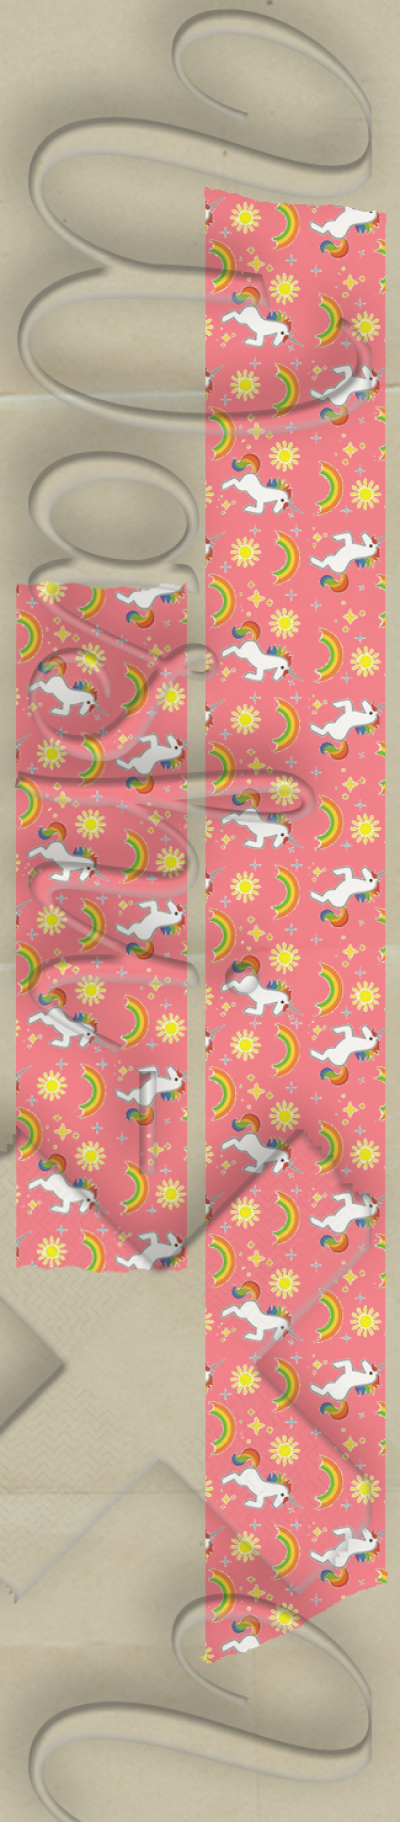 Washi-X Washi Tape Unicorns patterned washi tape